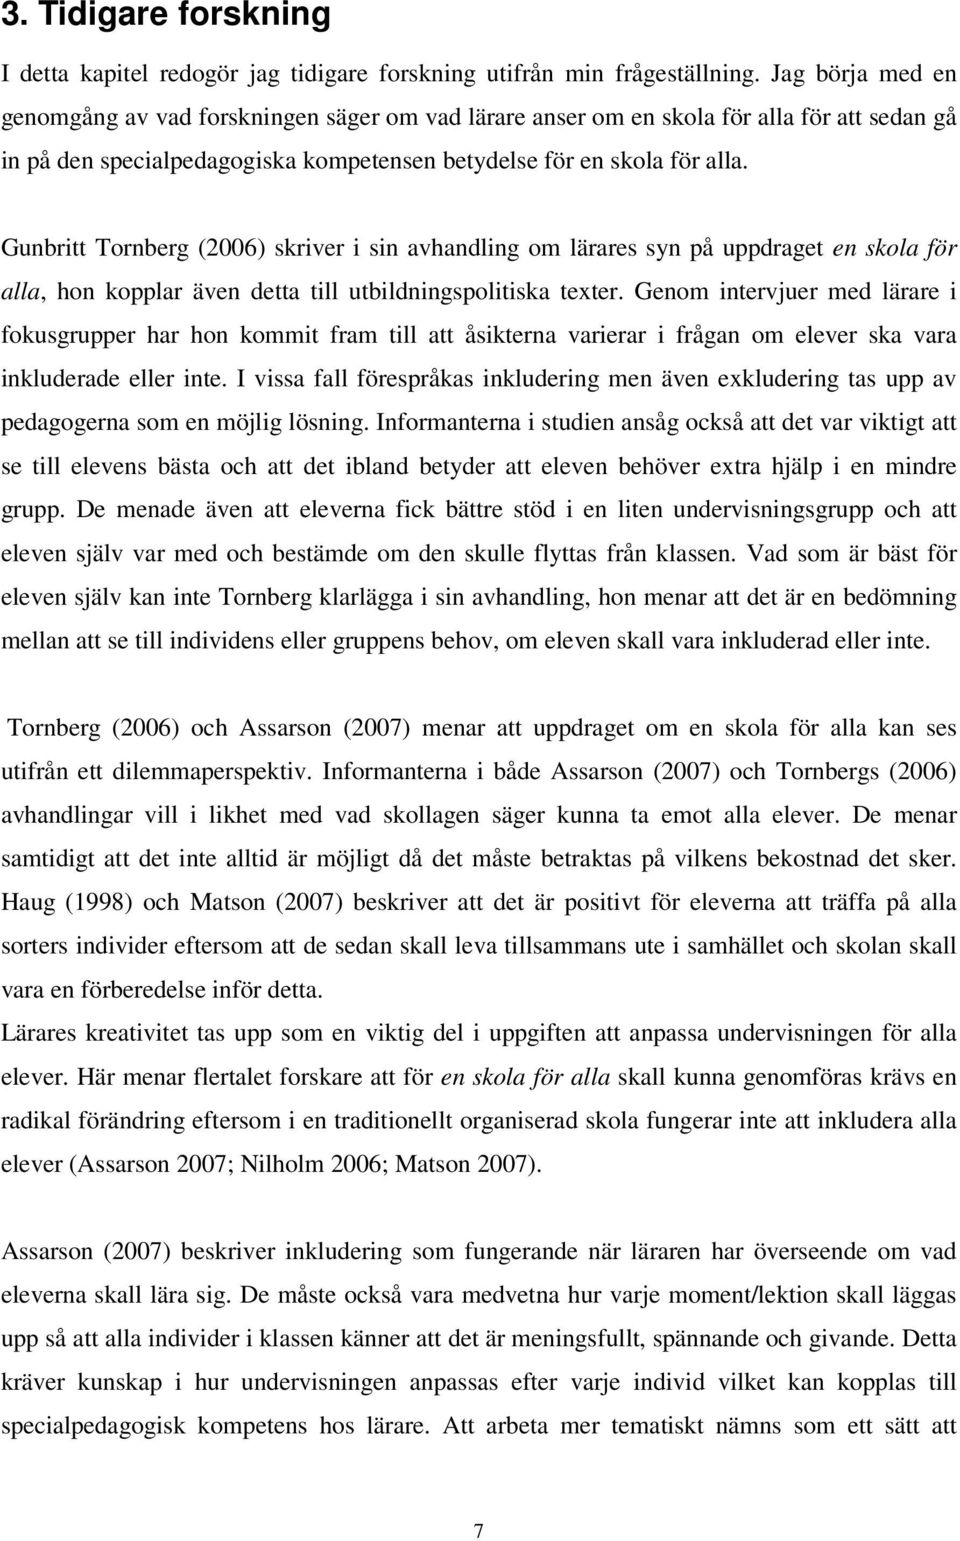 Gunbritt Tornberg (2006) skriver i sin avhandling om lärares syn på uppdraget en skola för alla, hon kopplar även detta till utbildningspolitiska texter.